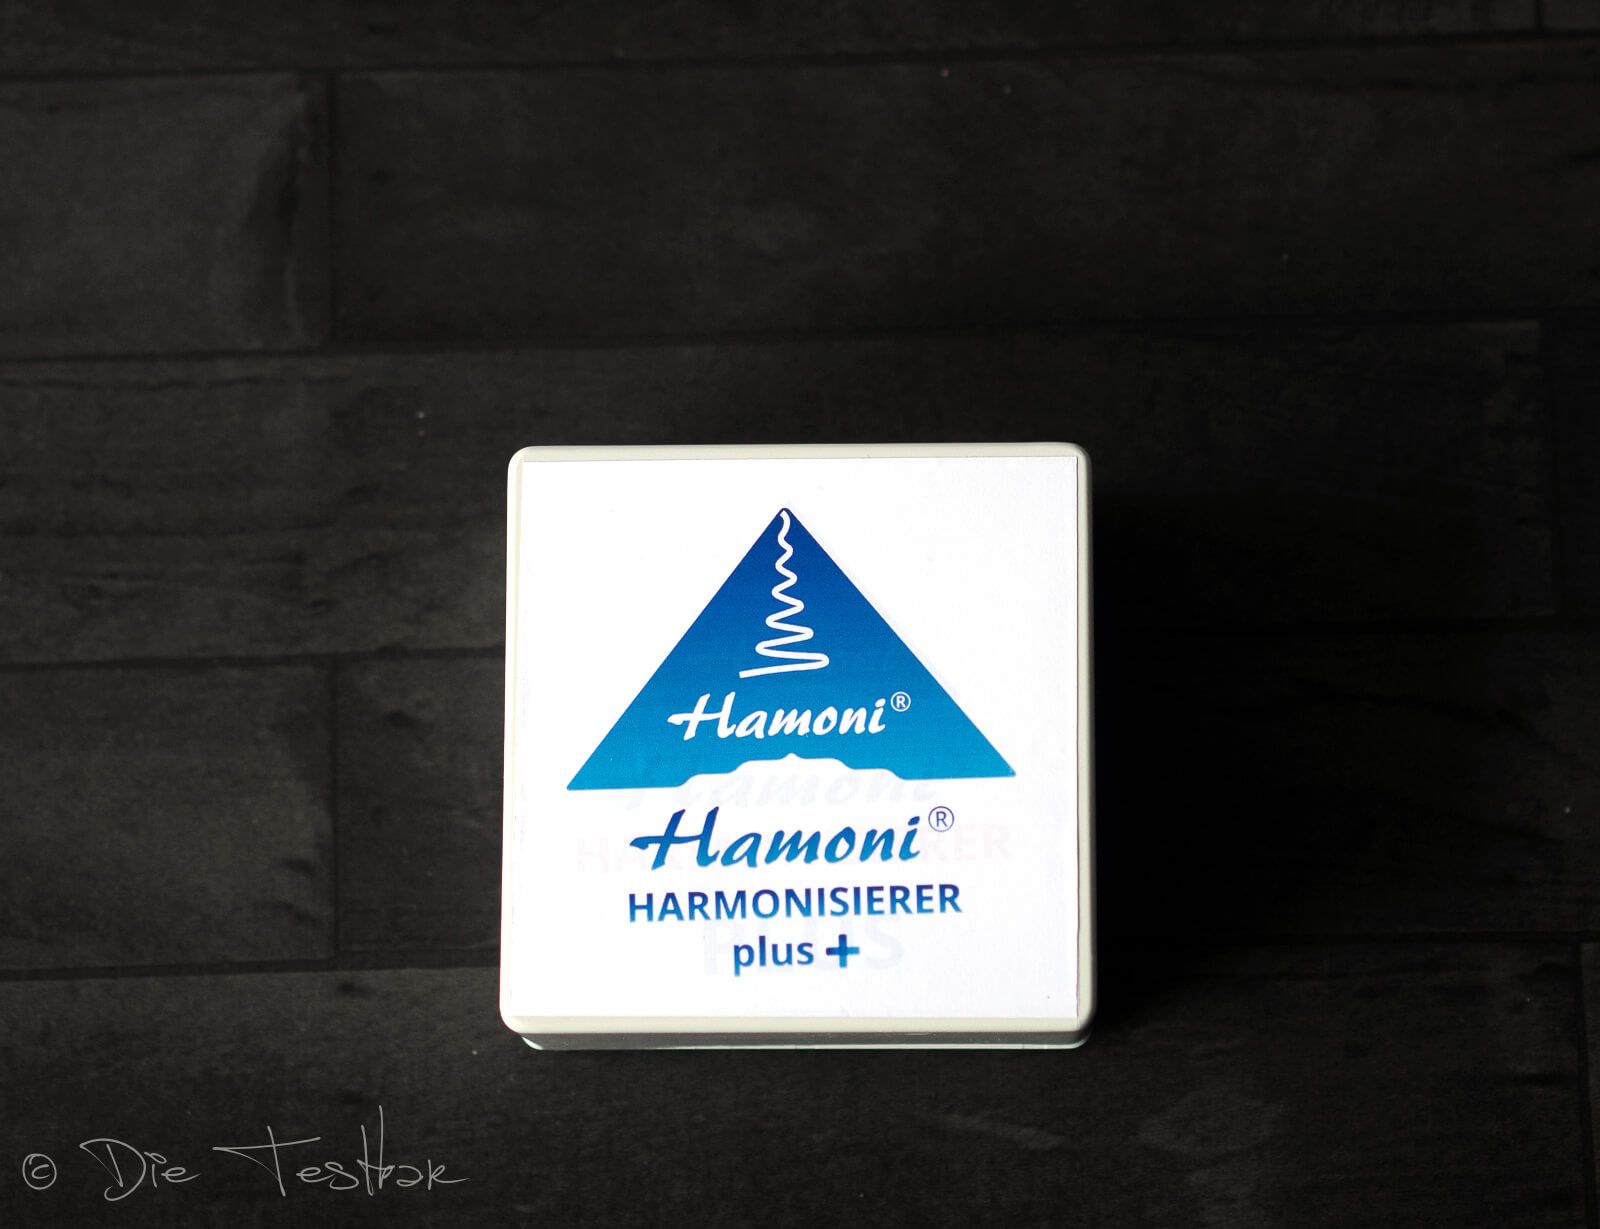 Hochwirksamer Schutz vor Elektrosmog für Zuhause, Arbeit und unterwegs mit dem Hamoni® Harmonisierer